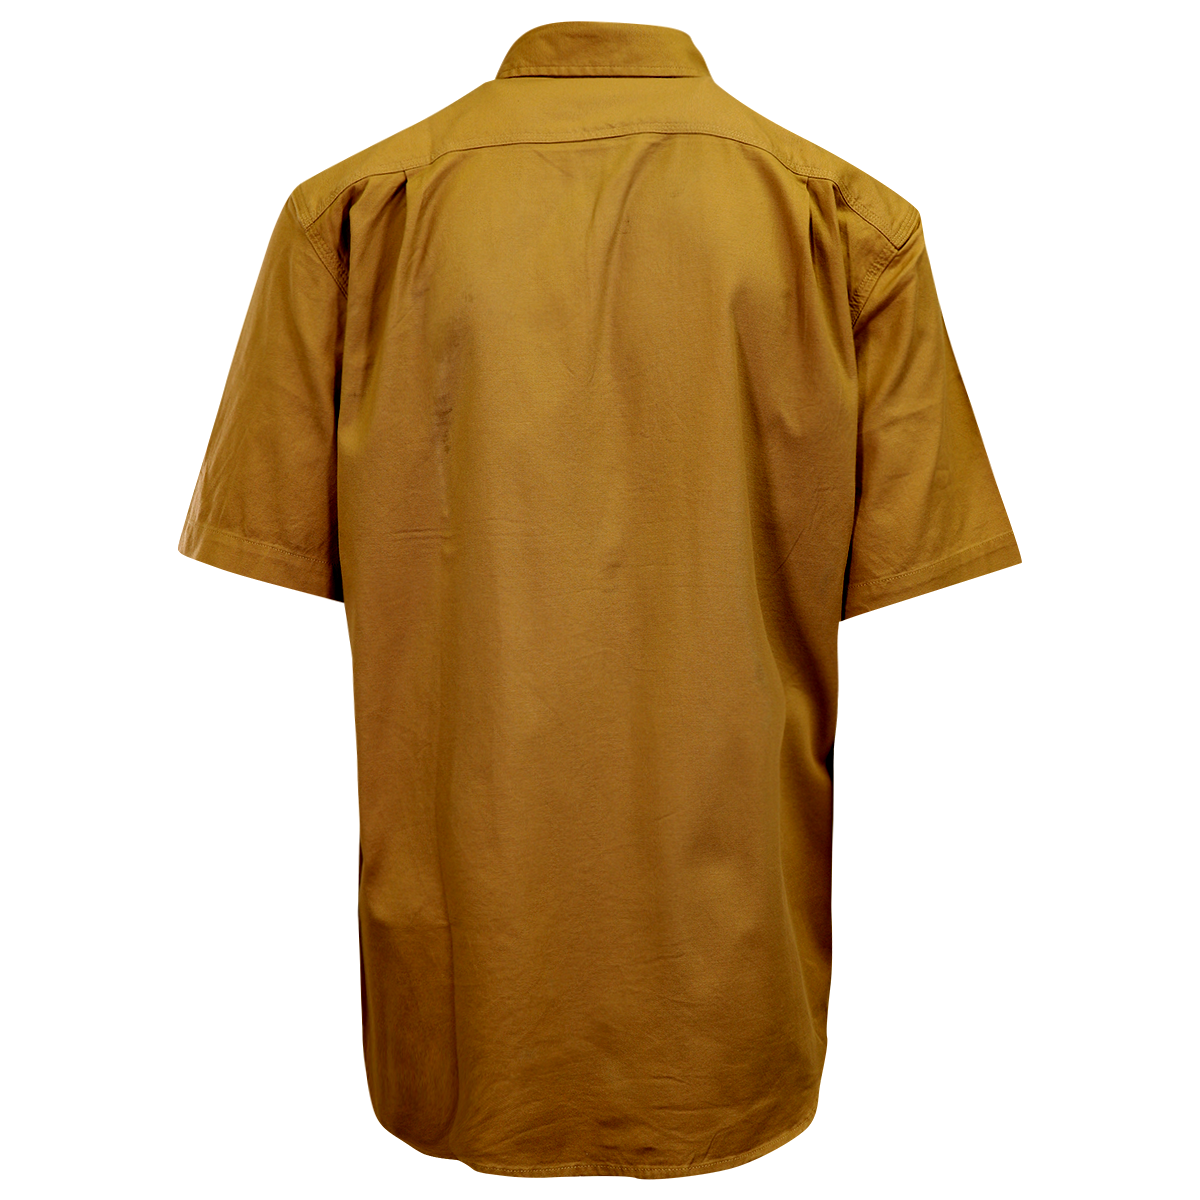 Carhartt Men's Flannel Shirt Tan Rugged Short Sleeve (224)